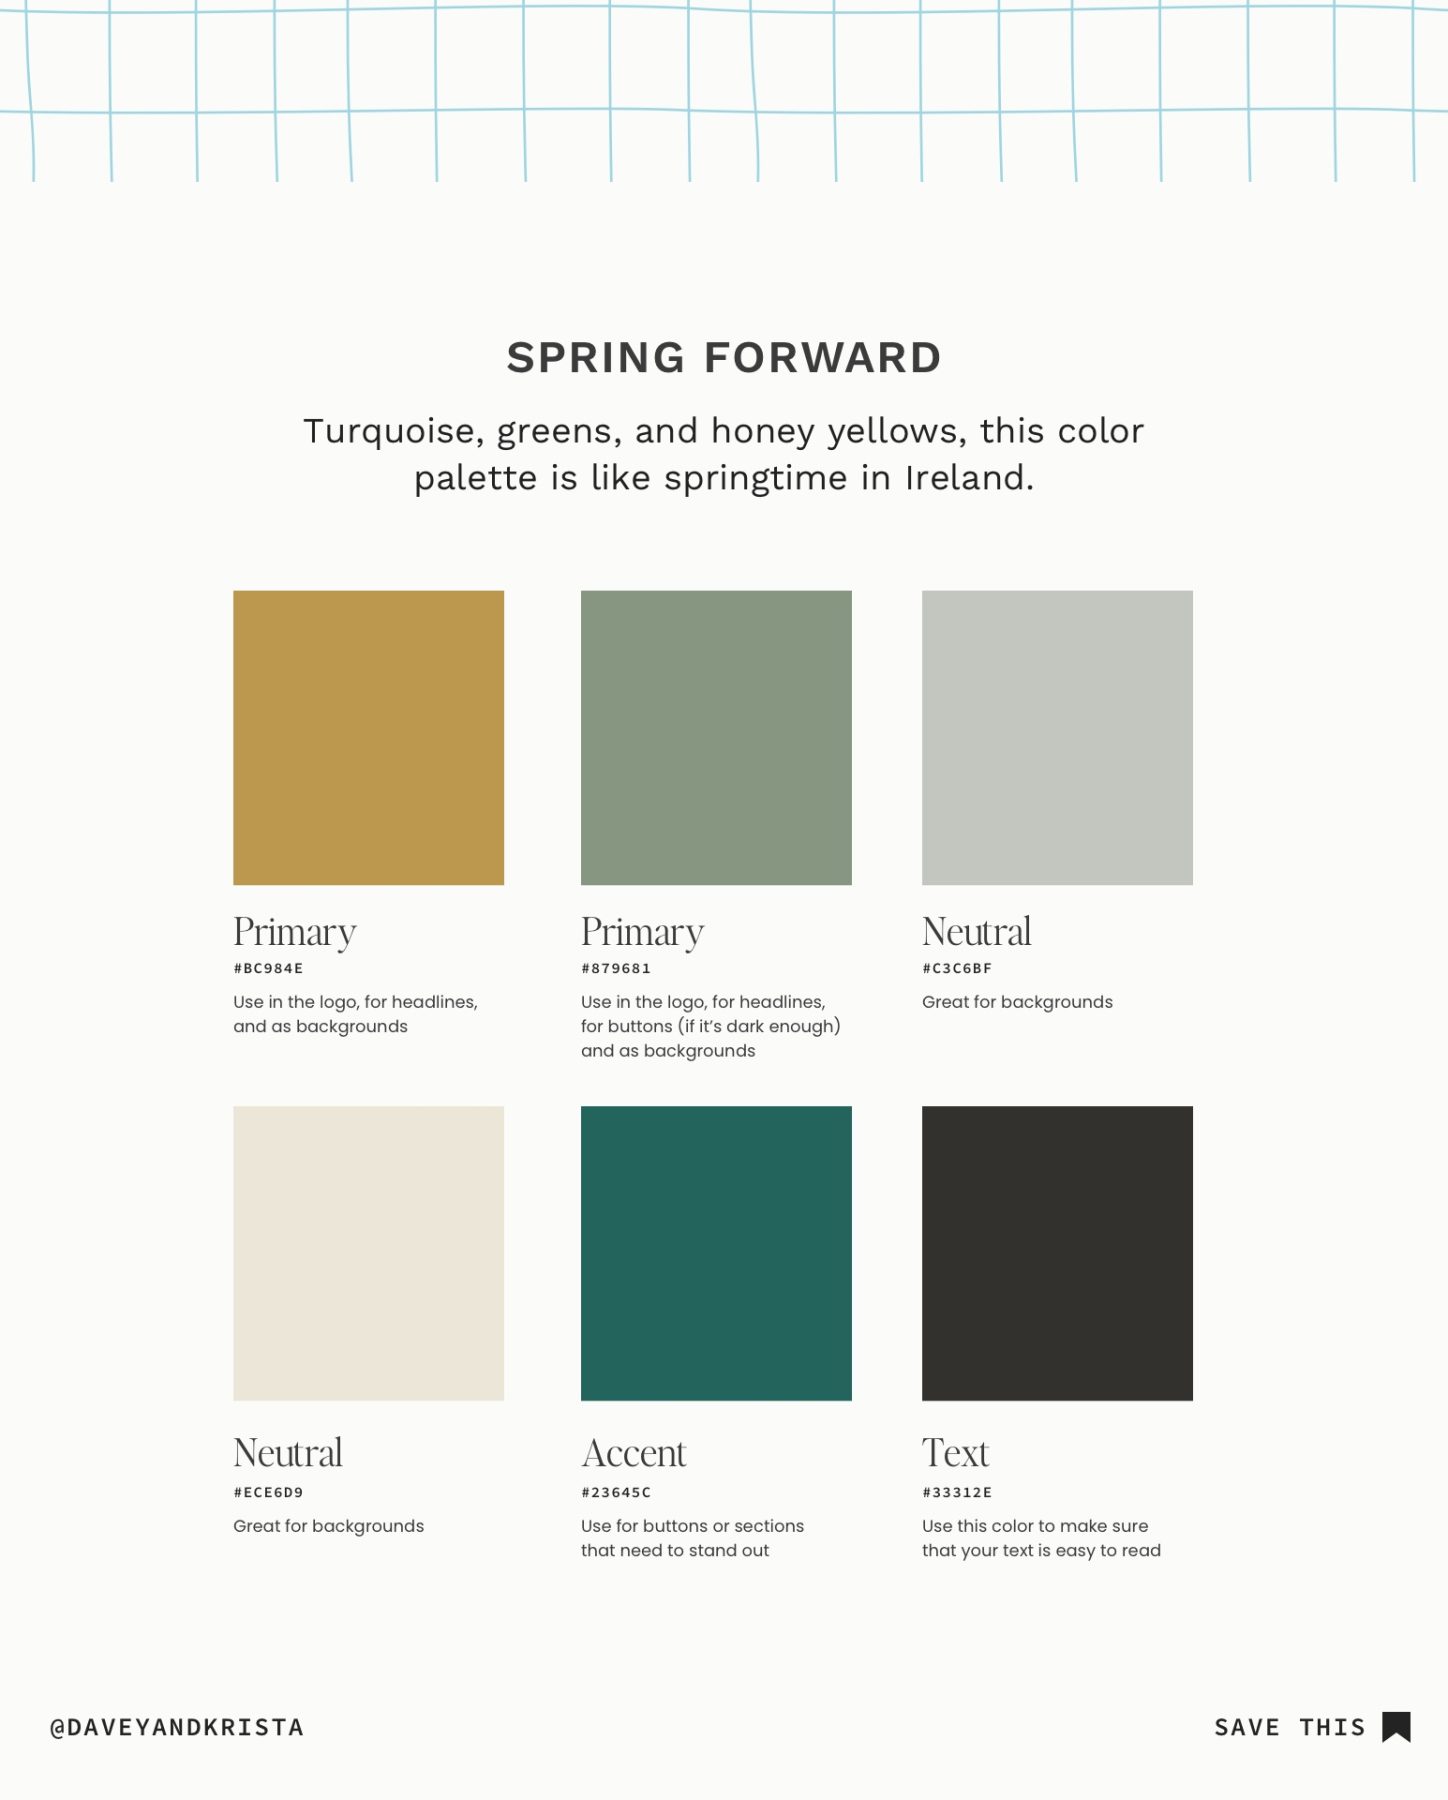 Spring Forward Color Palette for websites and brands.